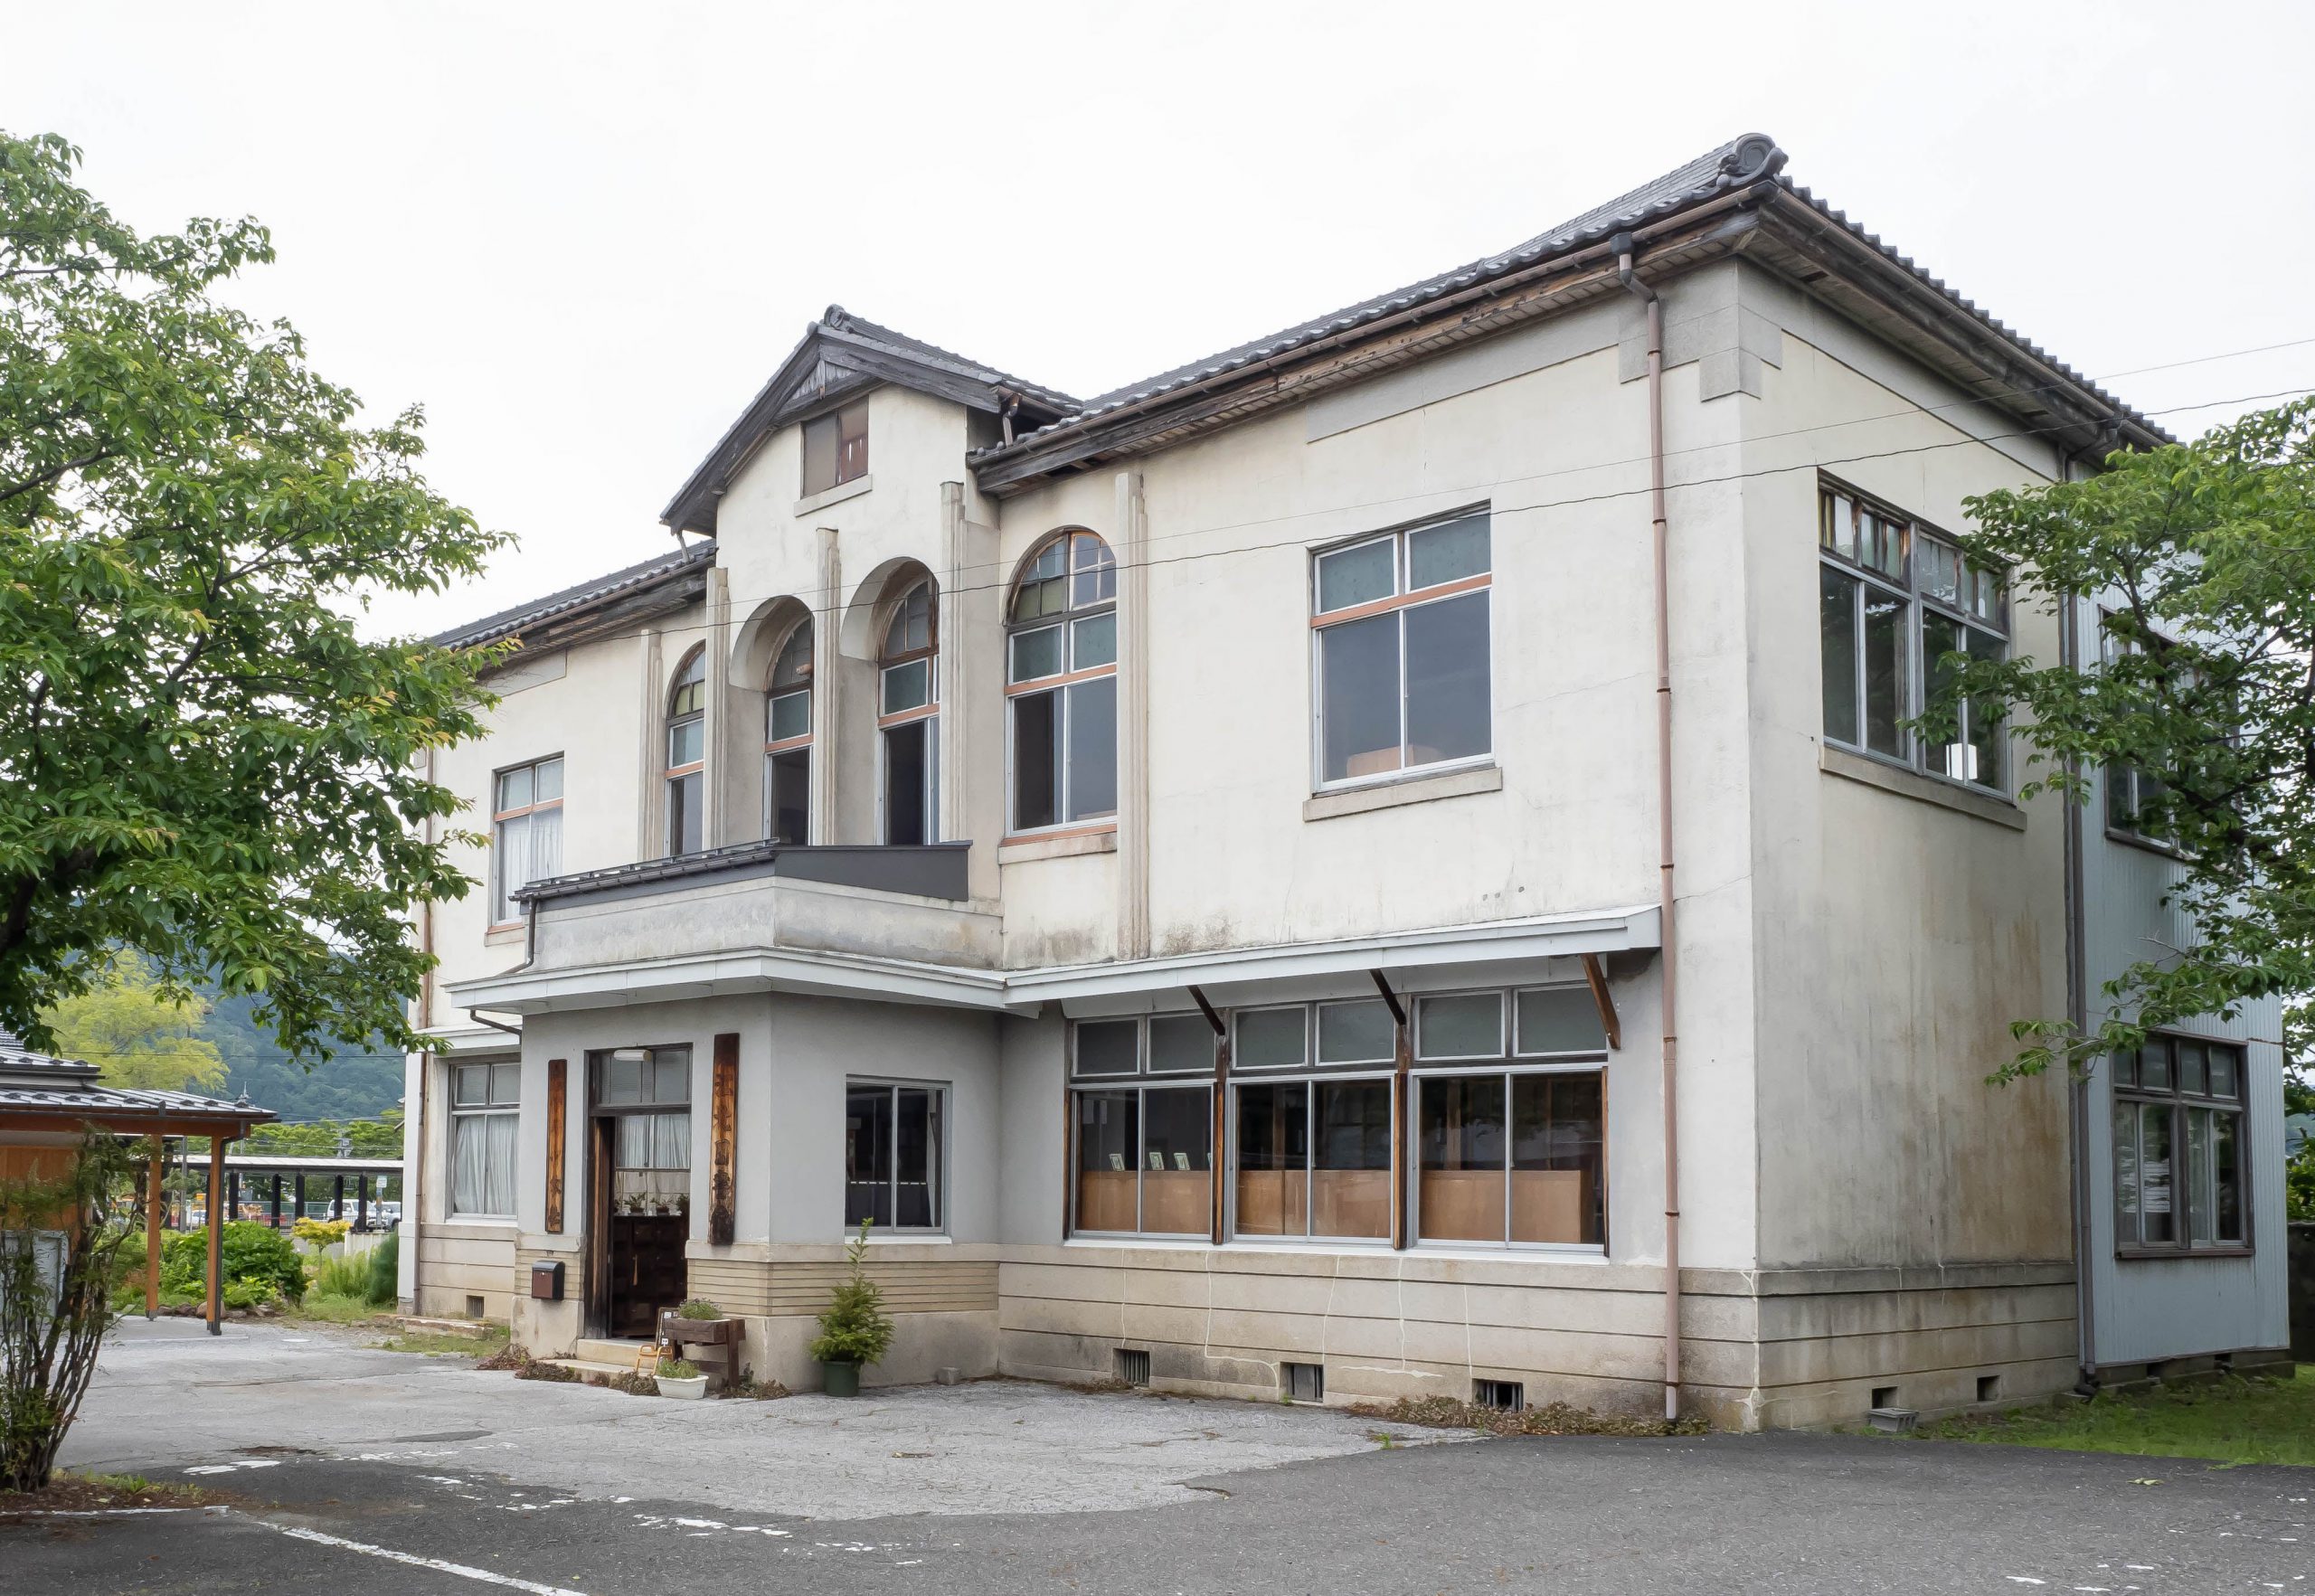 江北図書館（滋賀県長浜市木之本にある滋賀県で現存の最も古い図書館）